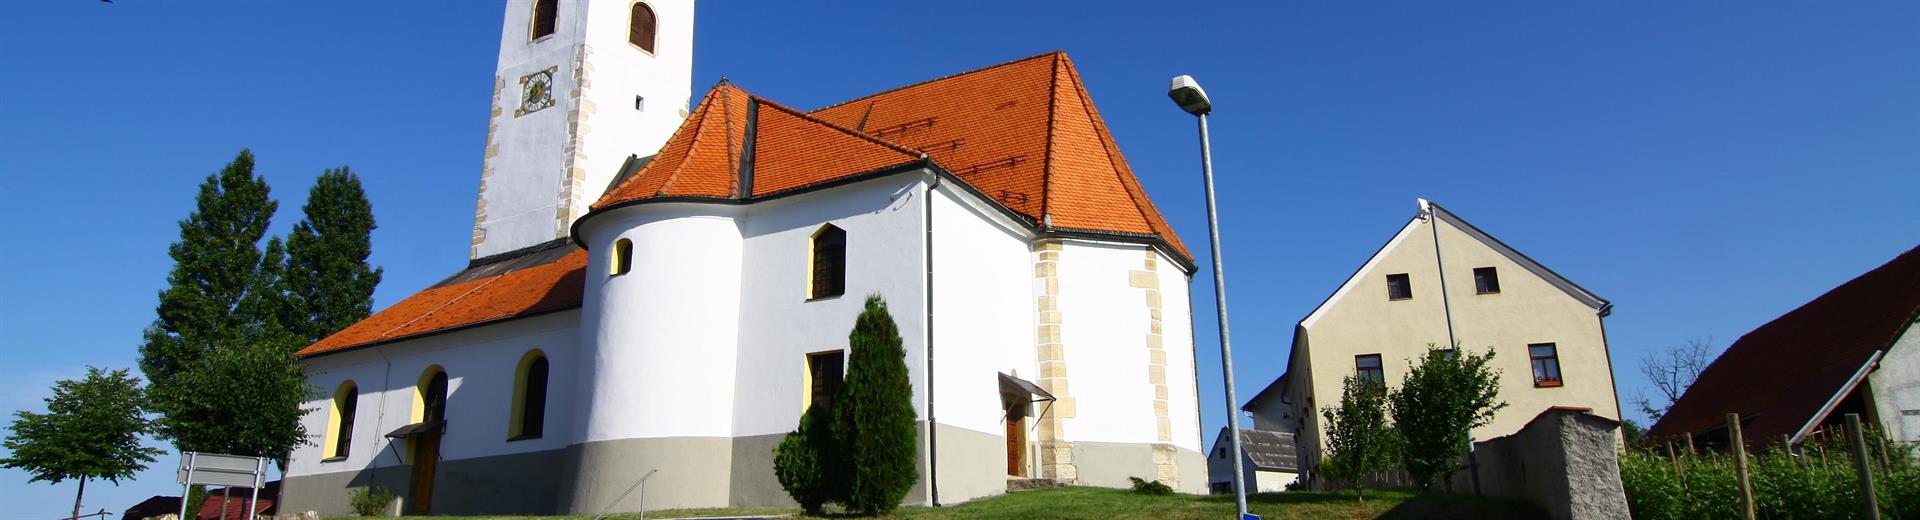 Cerkev sv. Urbana